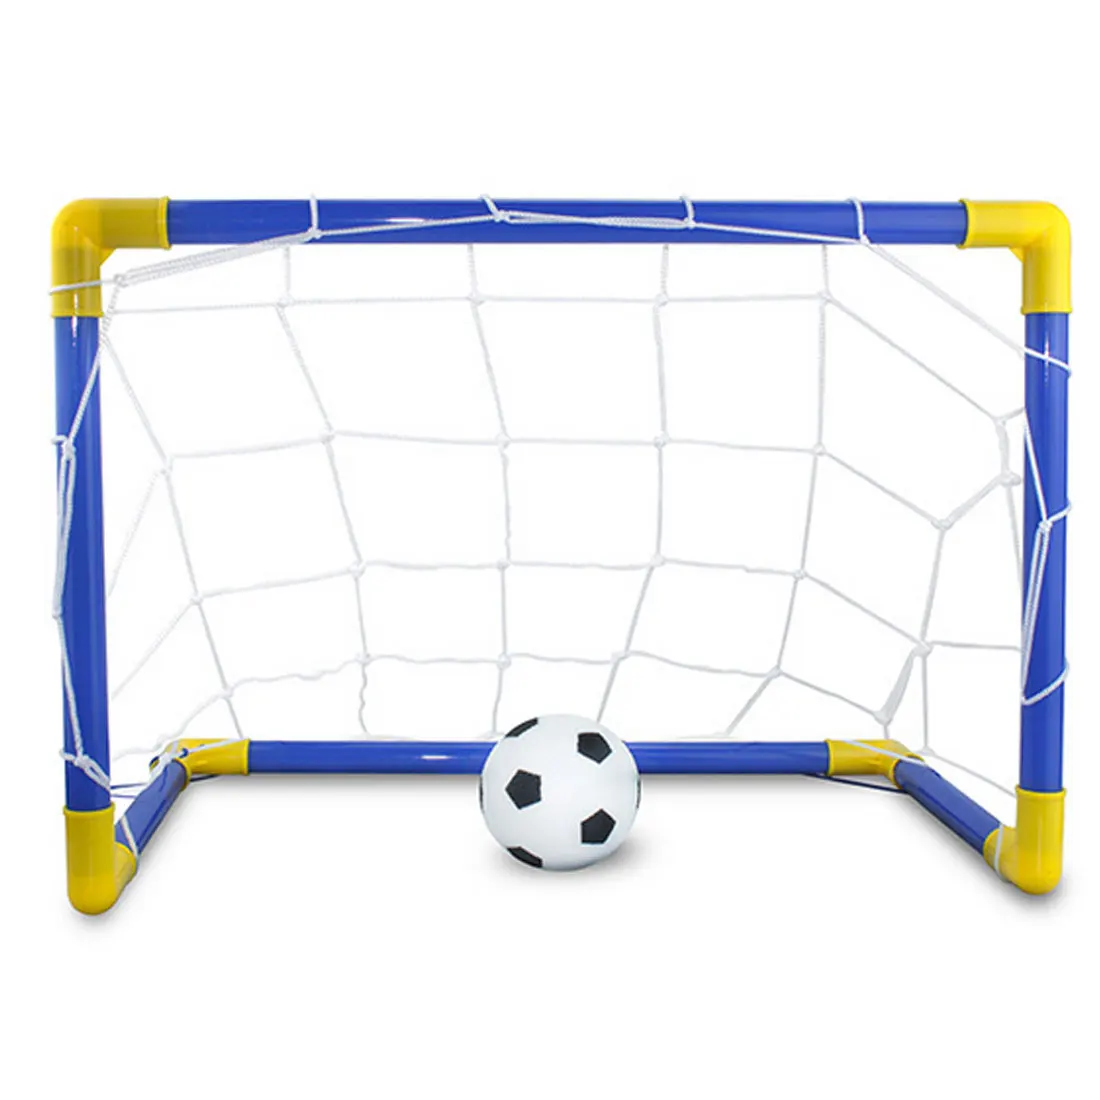 1 Набор детских спортивных мячей с футбольным мячом и насосом для занятий спортом на открытом воздухе, съемные ворота для игры в футбол